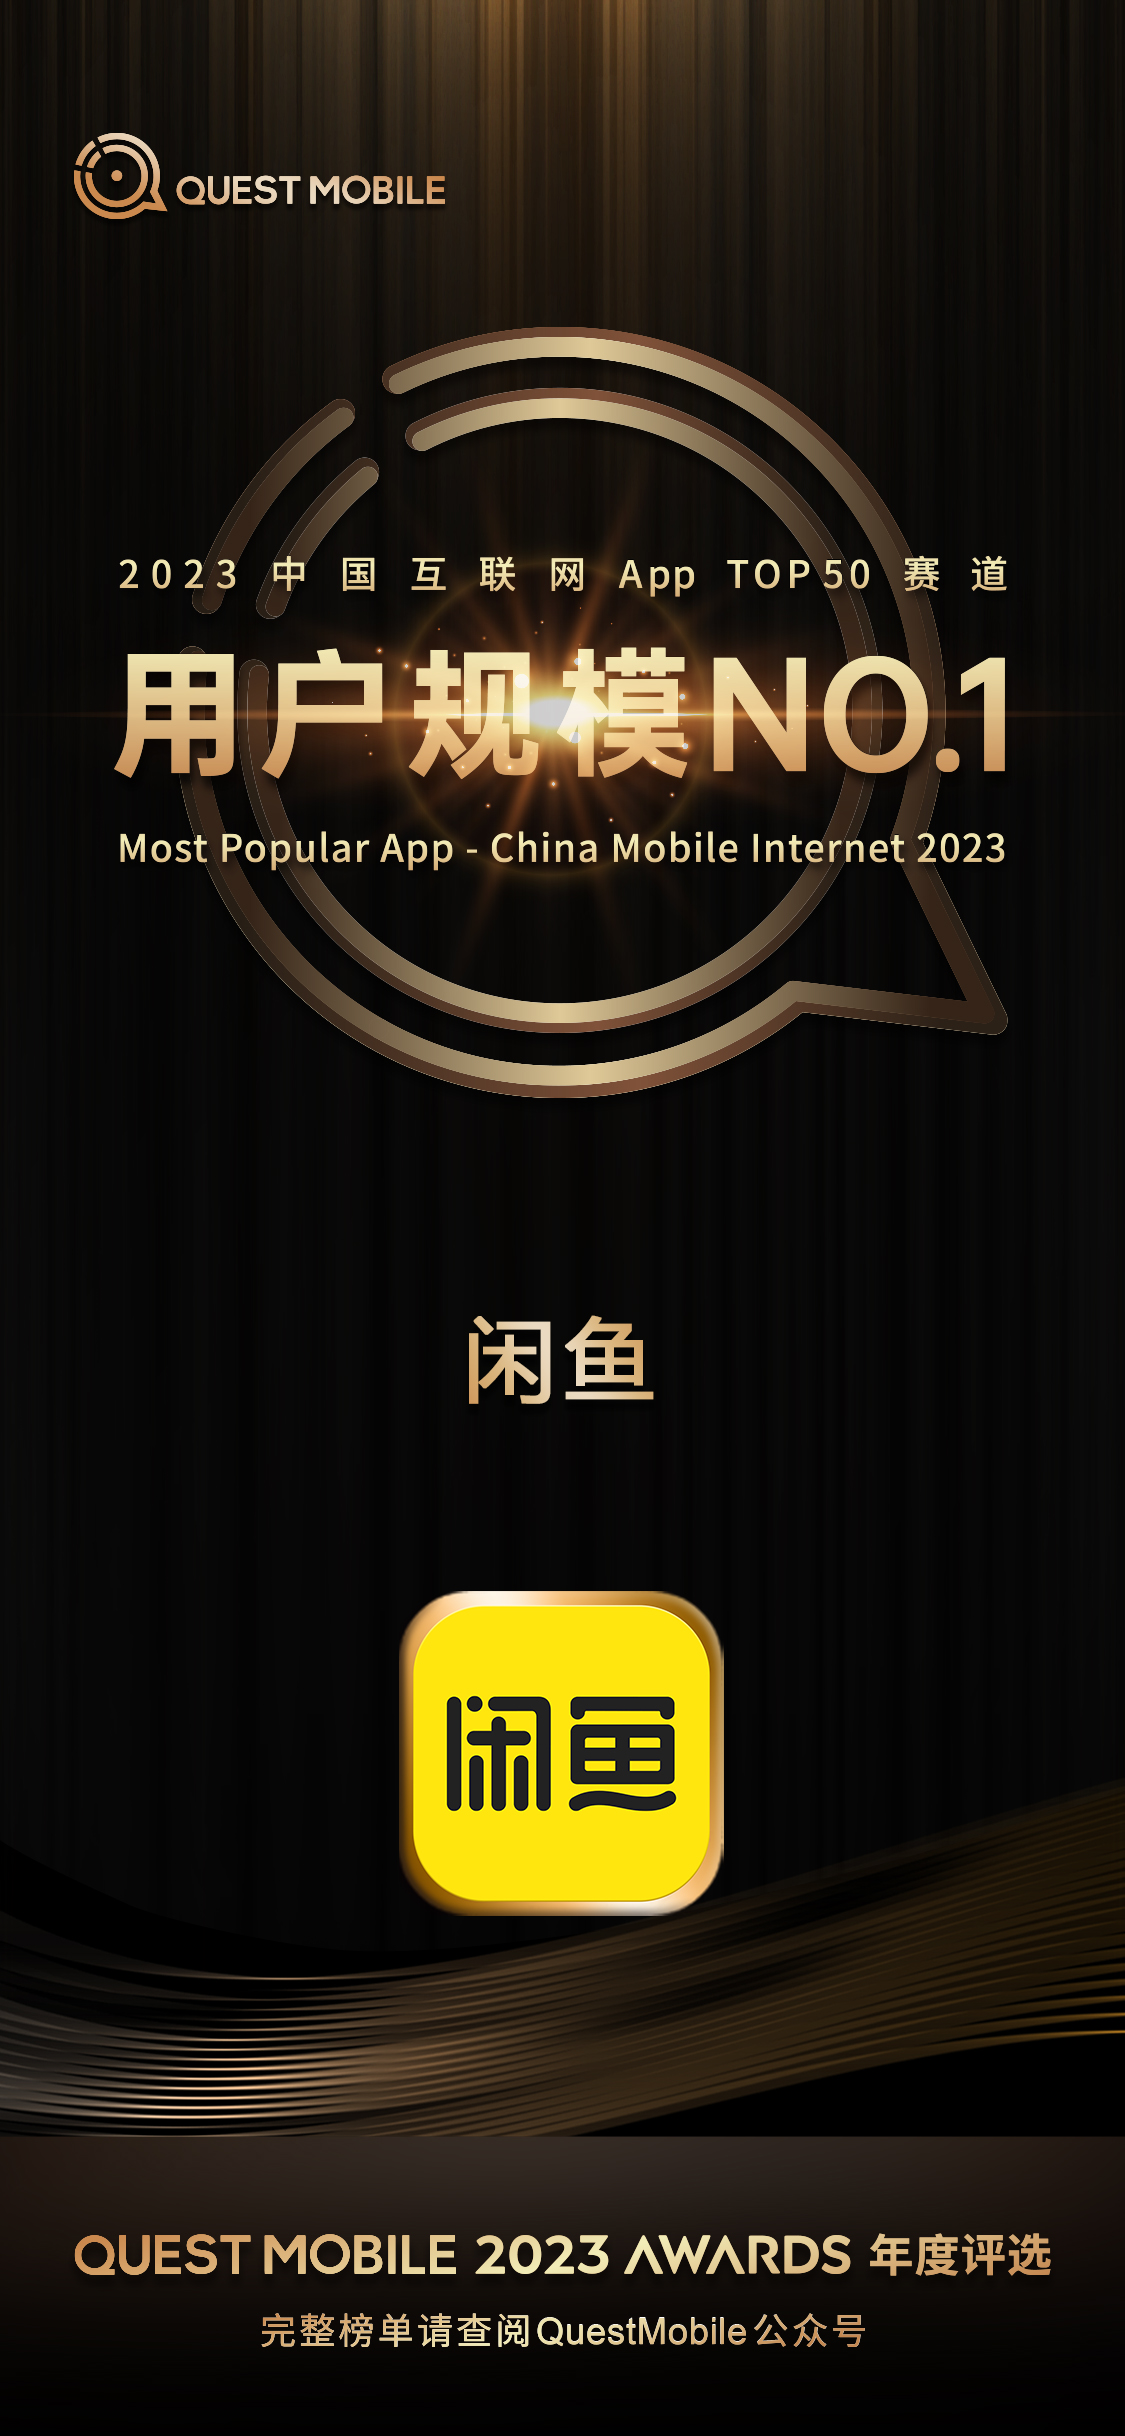 2023中国互联网“TOP50赛道”用户规模NO1APP出炉 闲鱼再度登榜